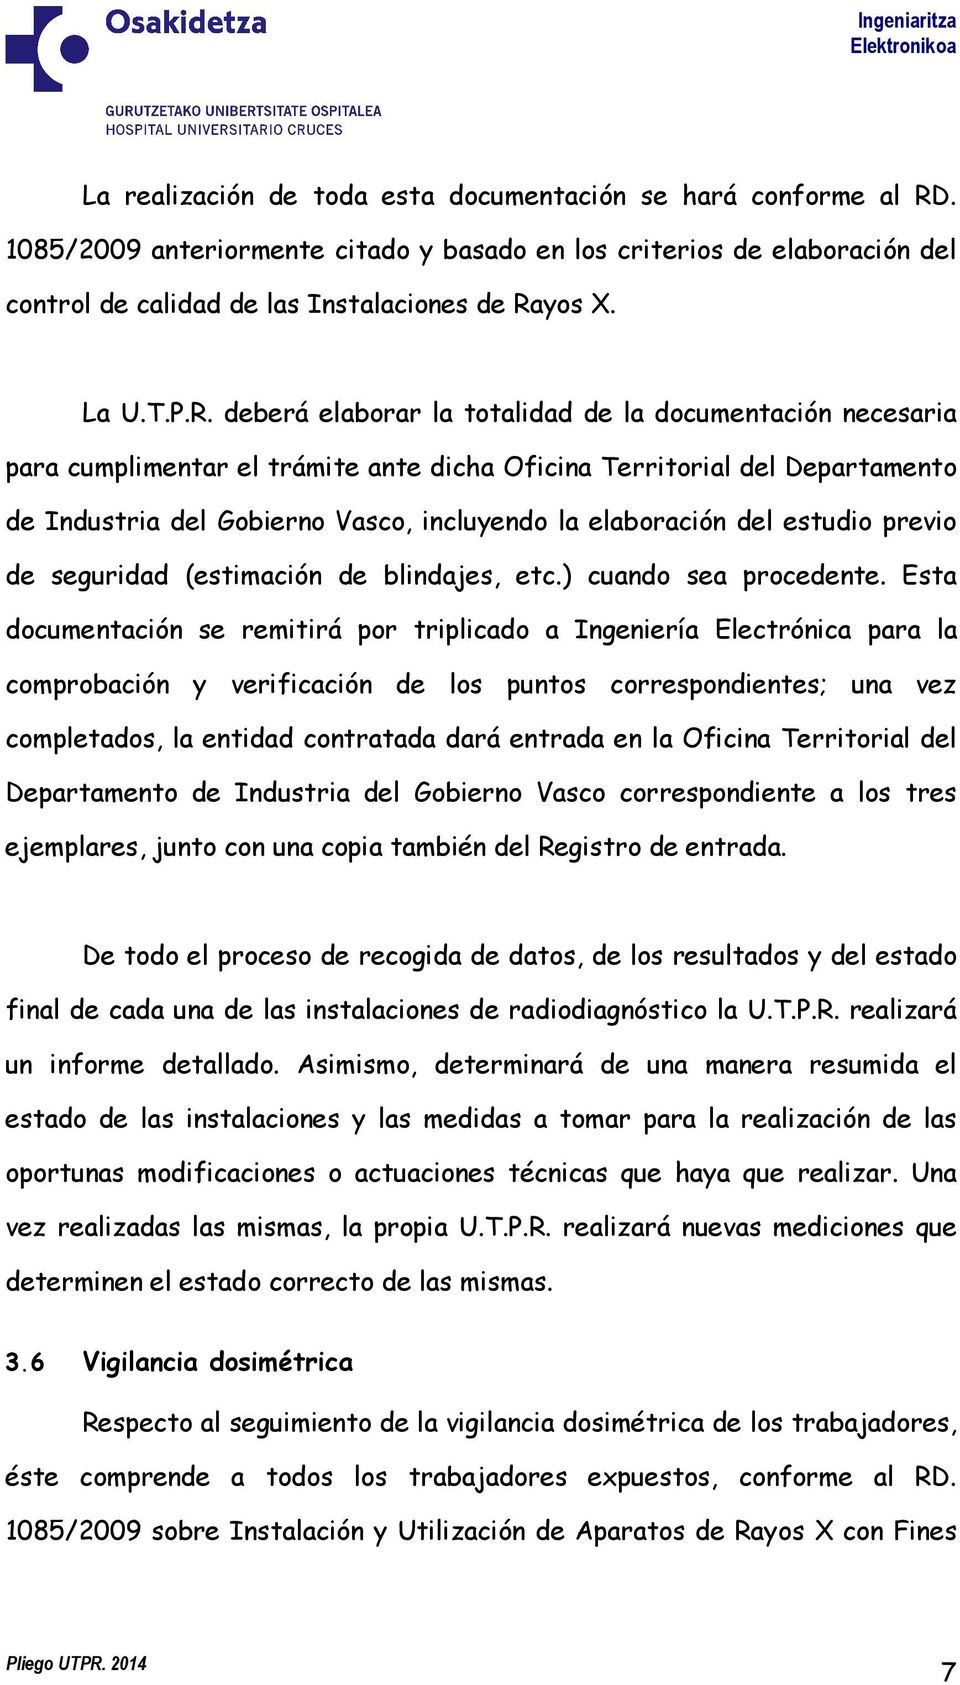 deberá elaborar la totalidad de la documentación necesaria para cumplimentar el trámite ante dicha Oficina Territorial del Departamento de Industria del Gobierno Vasco, incluyendo la elaboración del